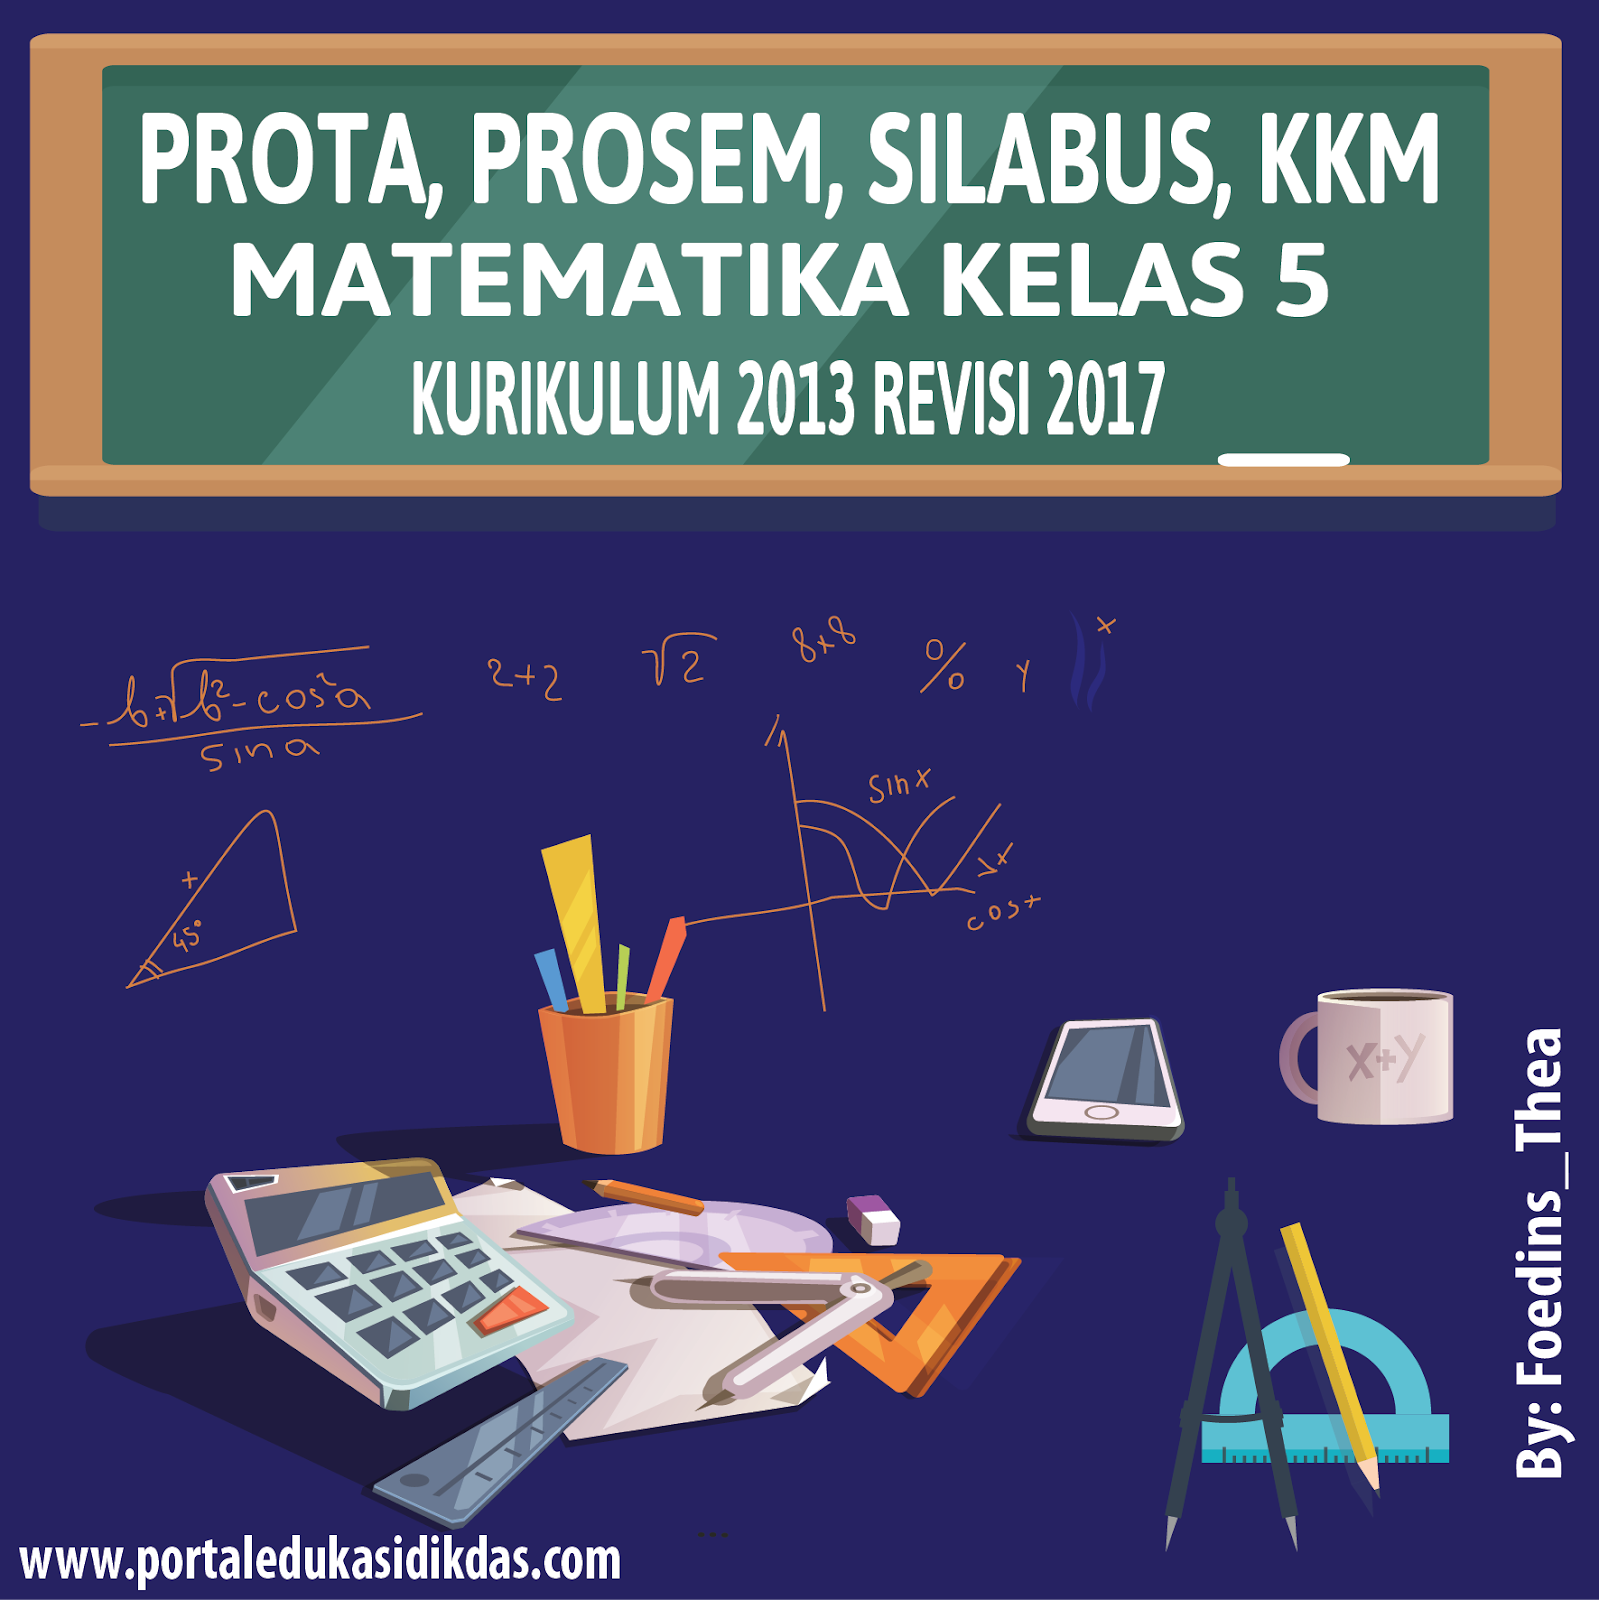 Prota Promes Silabus KKM Matematika Kelas 5 Smt 2 K 2013 revisi